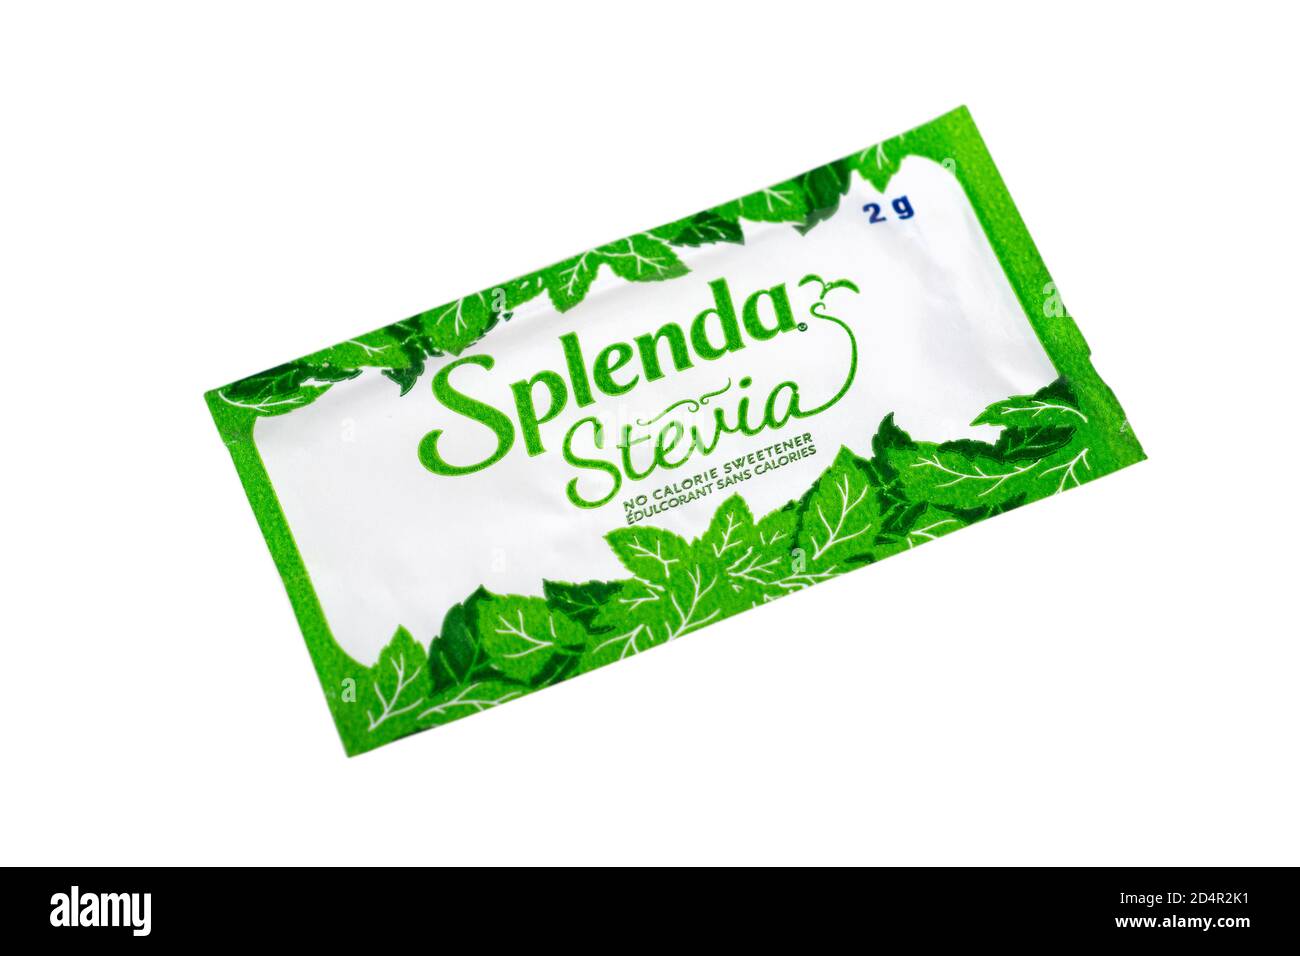 Confezione di Splenda Stevia, senza zucchero senza calorie dolcificante artificiale Foto Stock